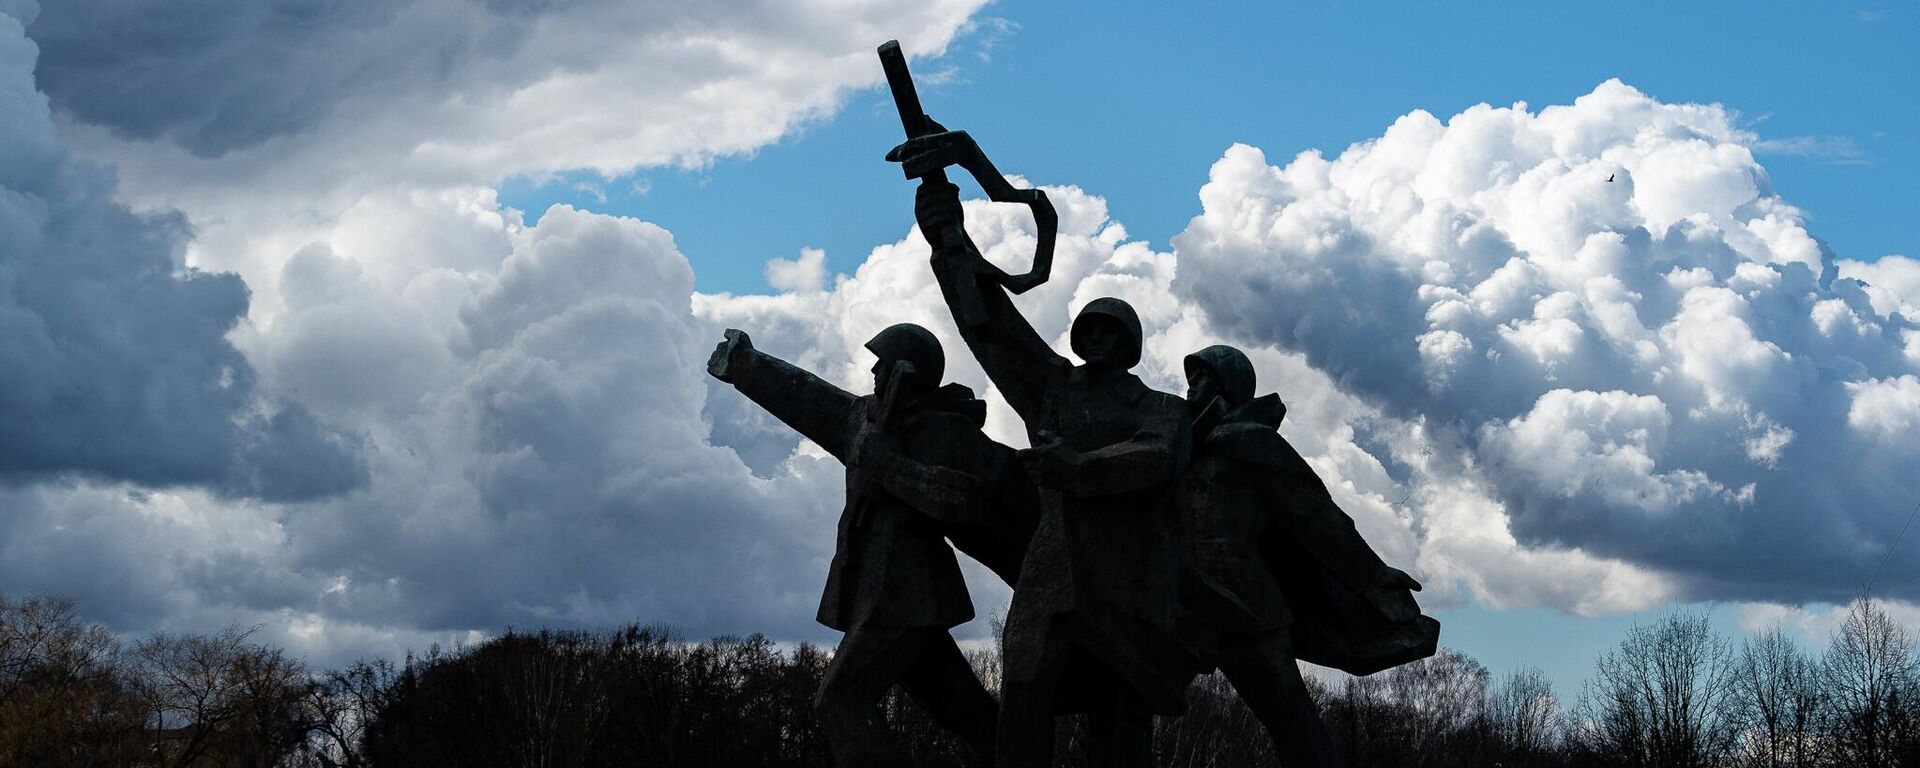 11 апреля мэр Риги принял решение оградить территорию пямятника Освободителям Риги в Пардаугаве - Sputnik Latvija, 1920, 19.04.2022